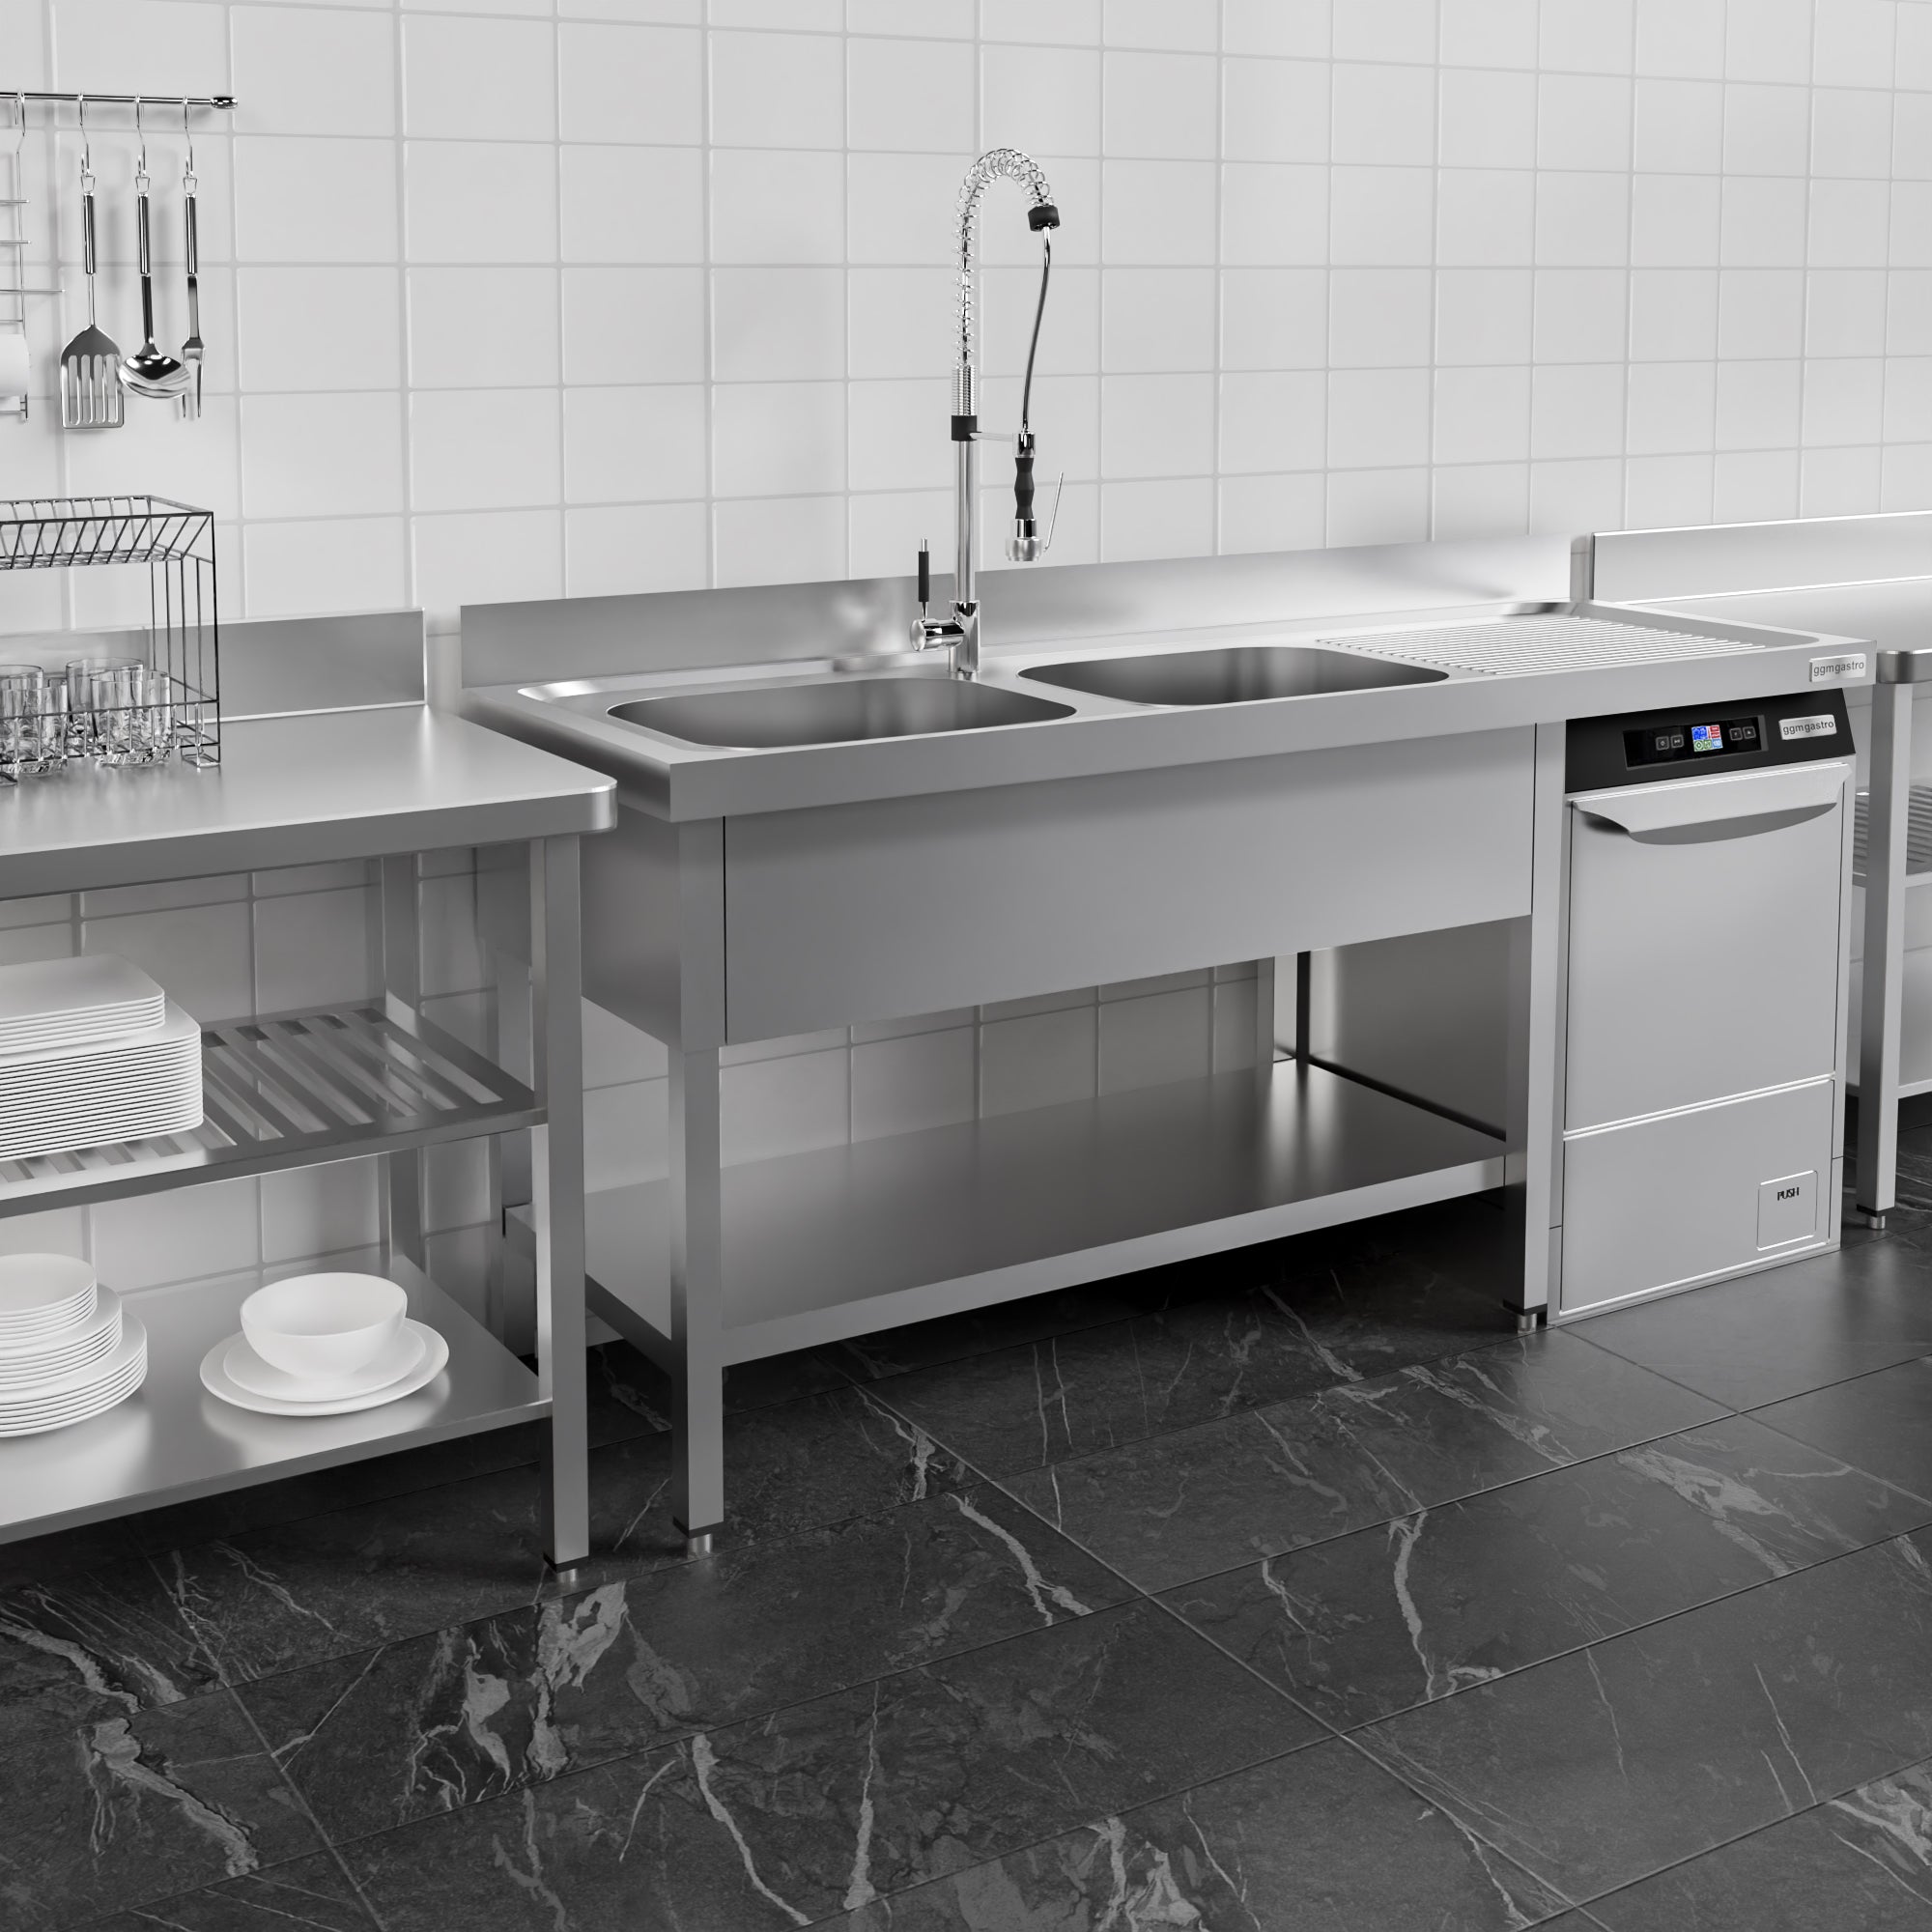 Vaskeborde med plads til opvaskemaskine 1,6m - 2 Vaske til Venstre L 40 x B 50 x D 25 cm